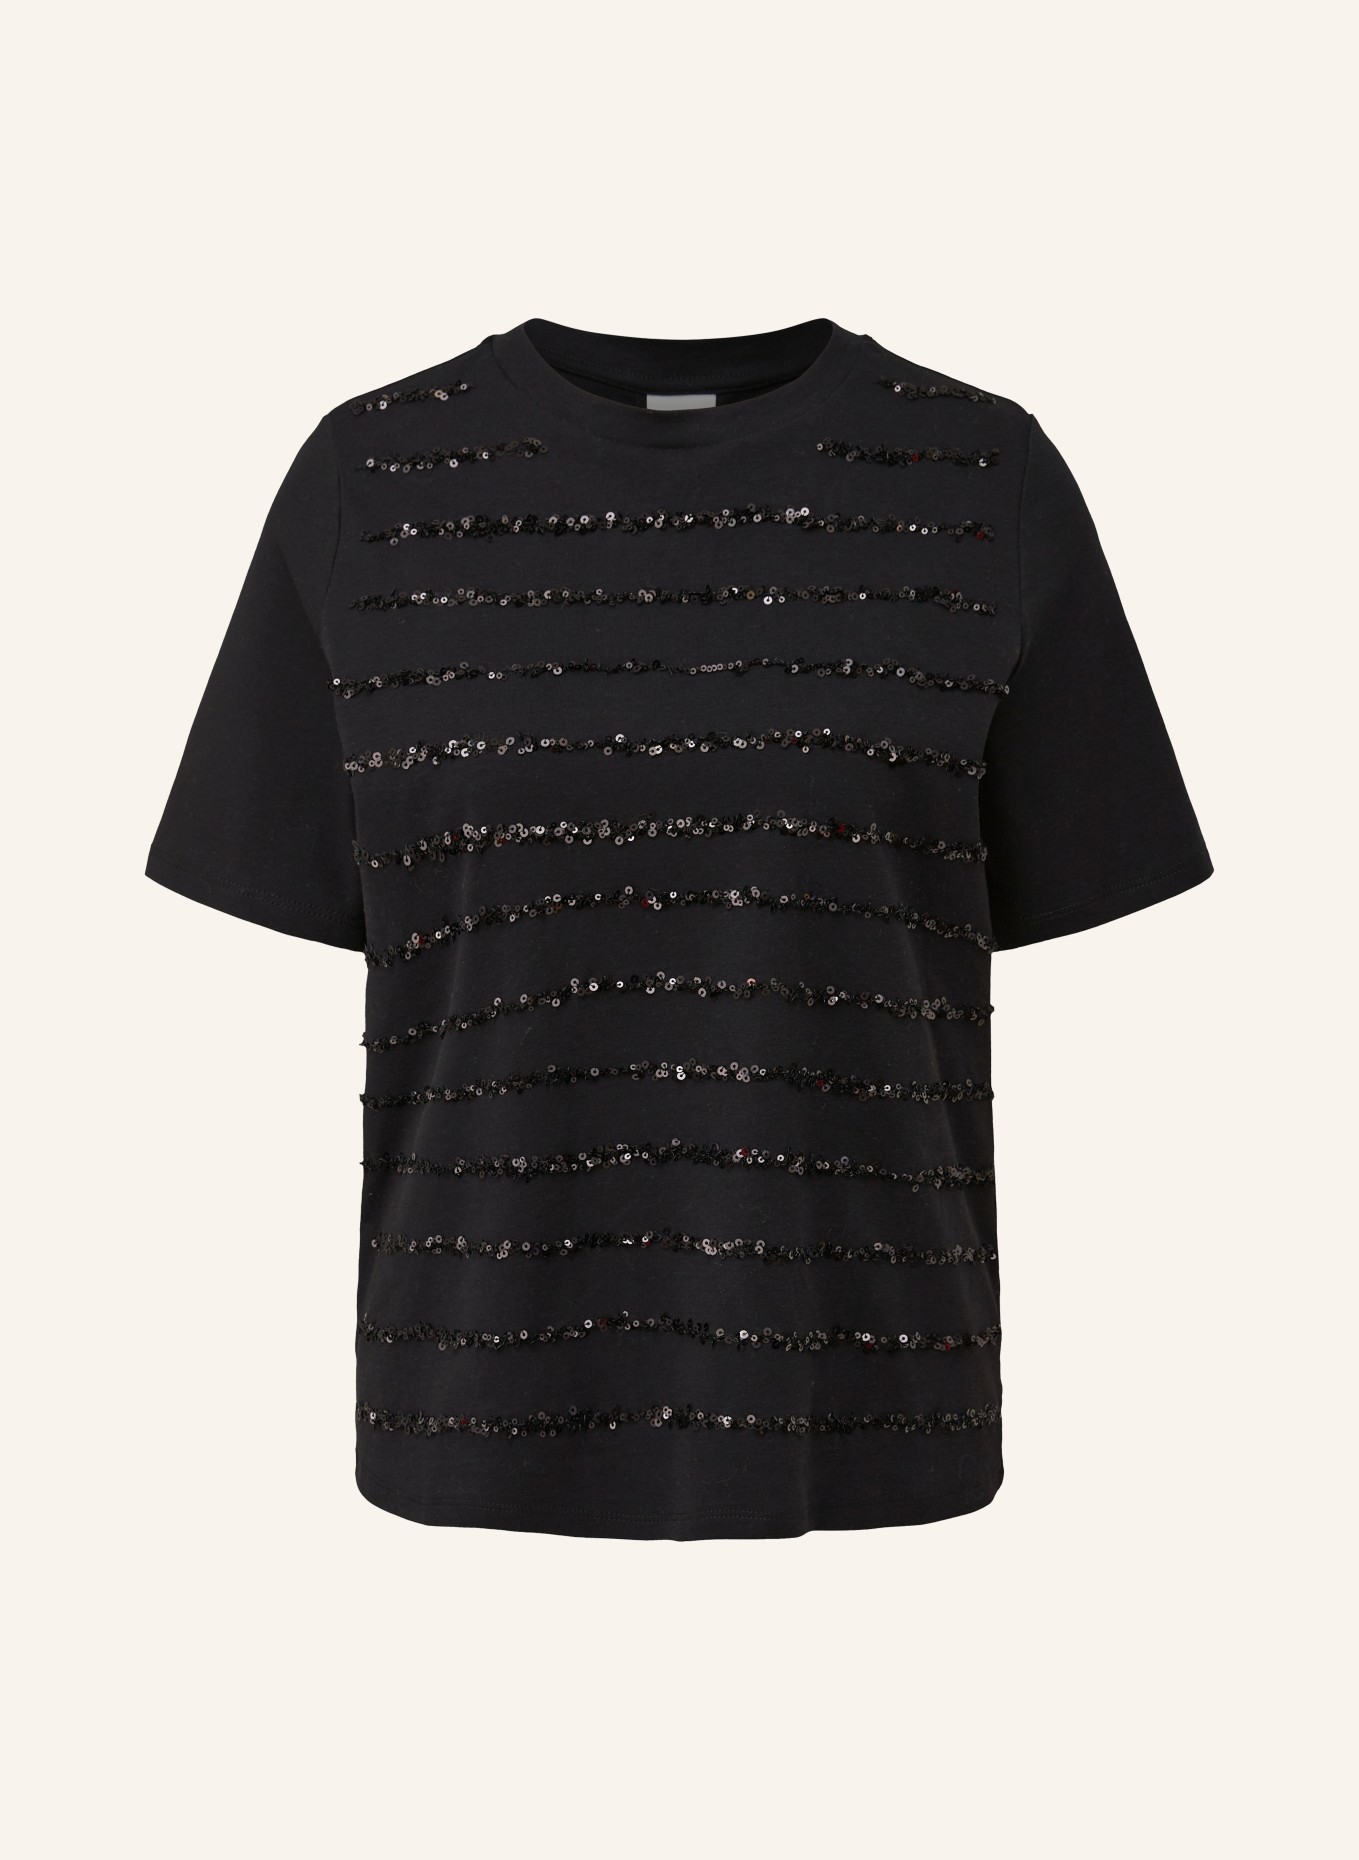 s.Oliver mit LABEL in BLACK T-Shirt schwarz Pailletten